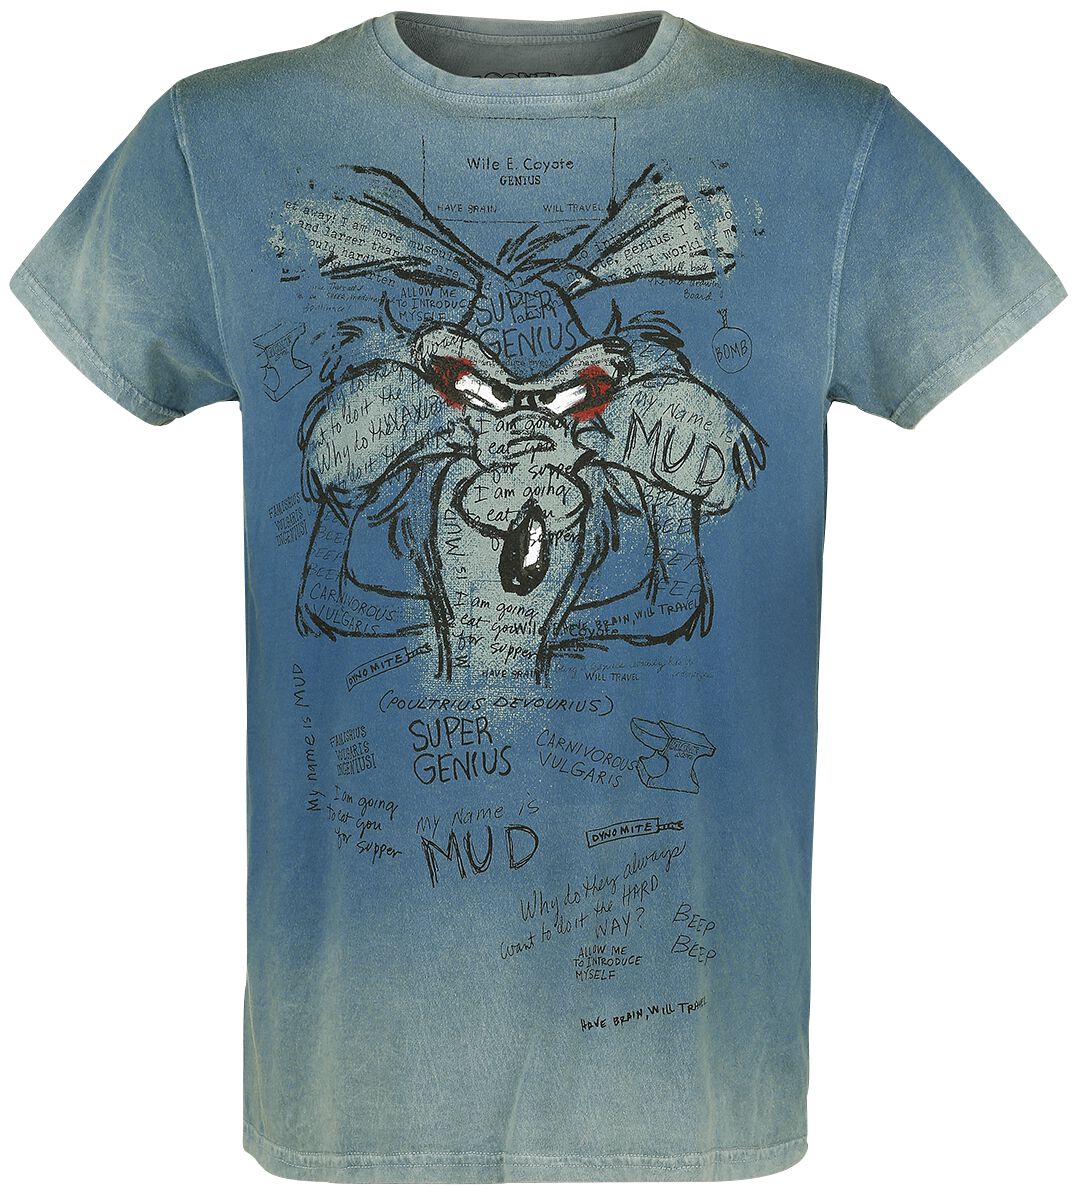 Looney Tunes T-Shirt - Wile E. Coyote - Inner Thoughts - S - für Männer - Größe S - türkis  - EMP exklusives Merchandise!